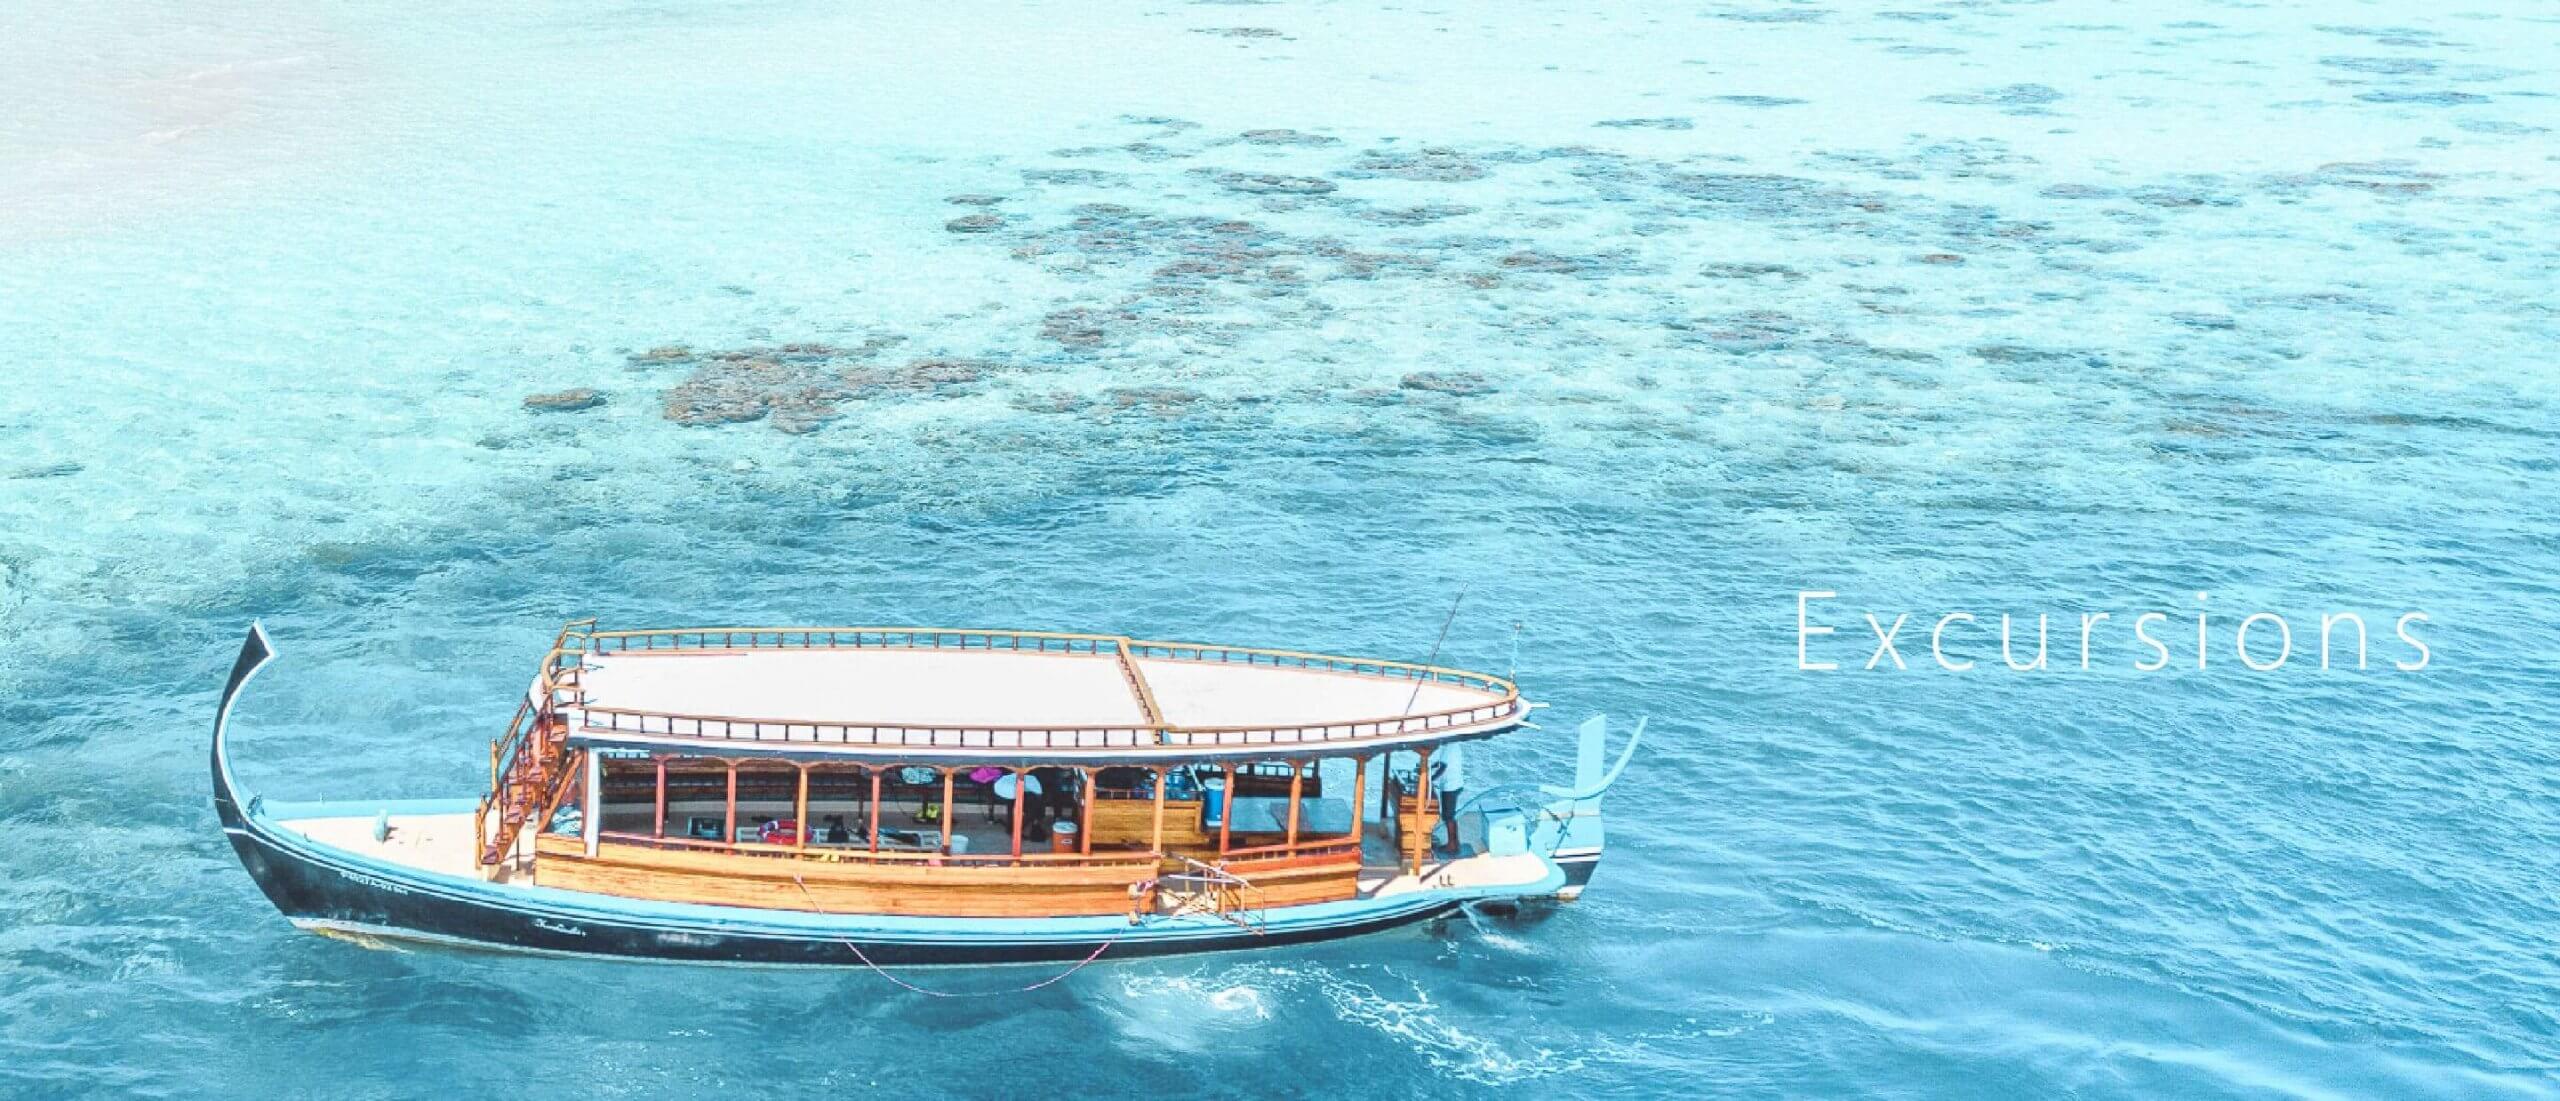 馬爾地夫一價全包-鉑爾曼度假村 Pullman Maldives (5)